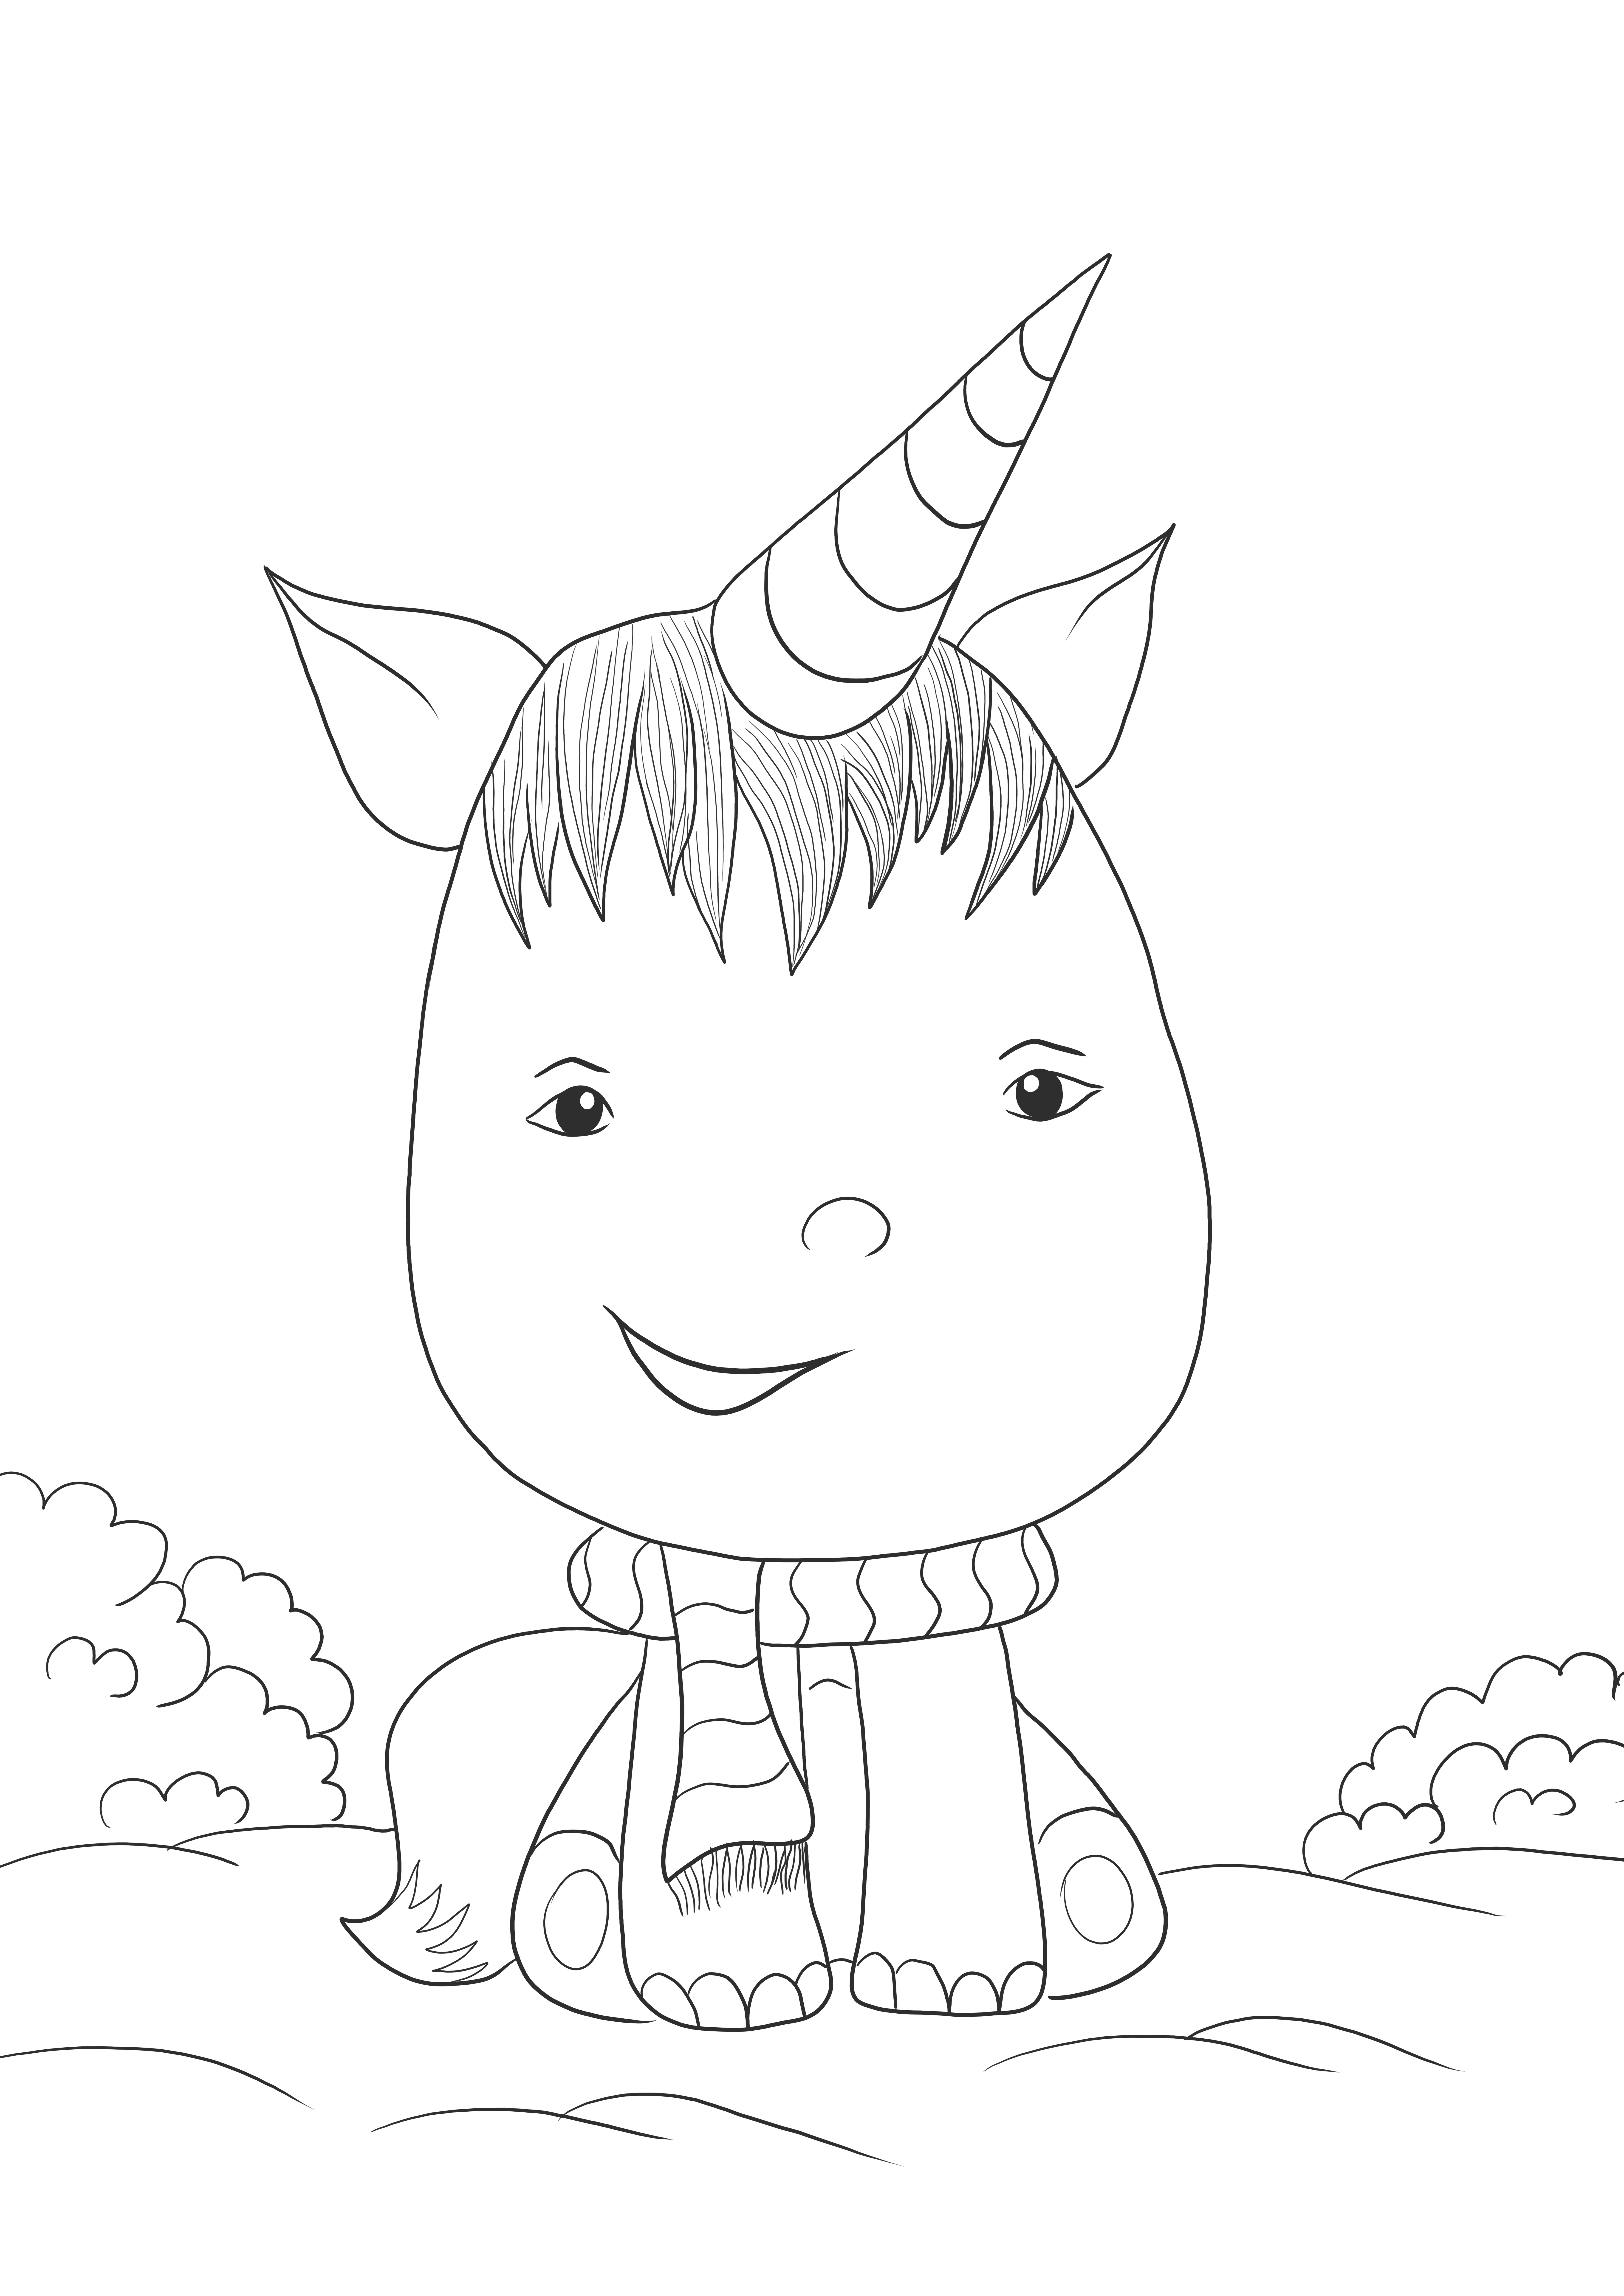 Kawaii Unicorn para baixar ou imprimir gratuitamente e colorir